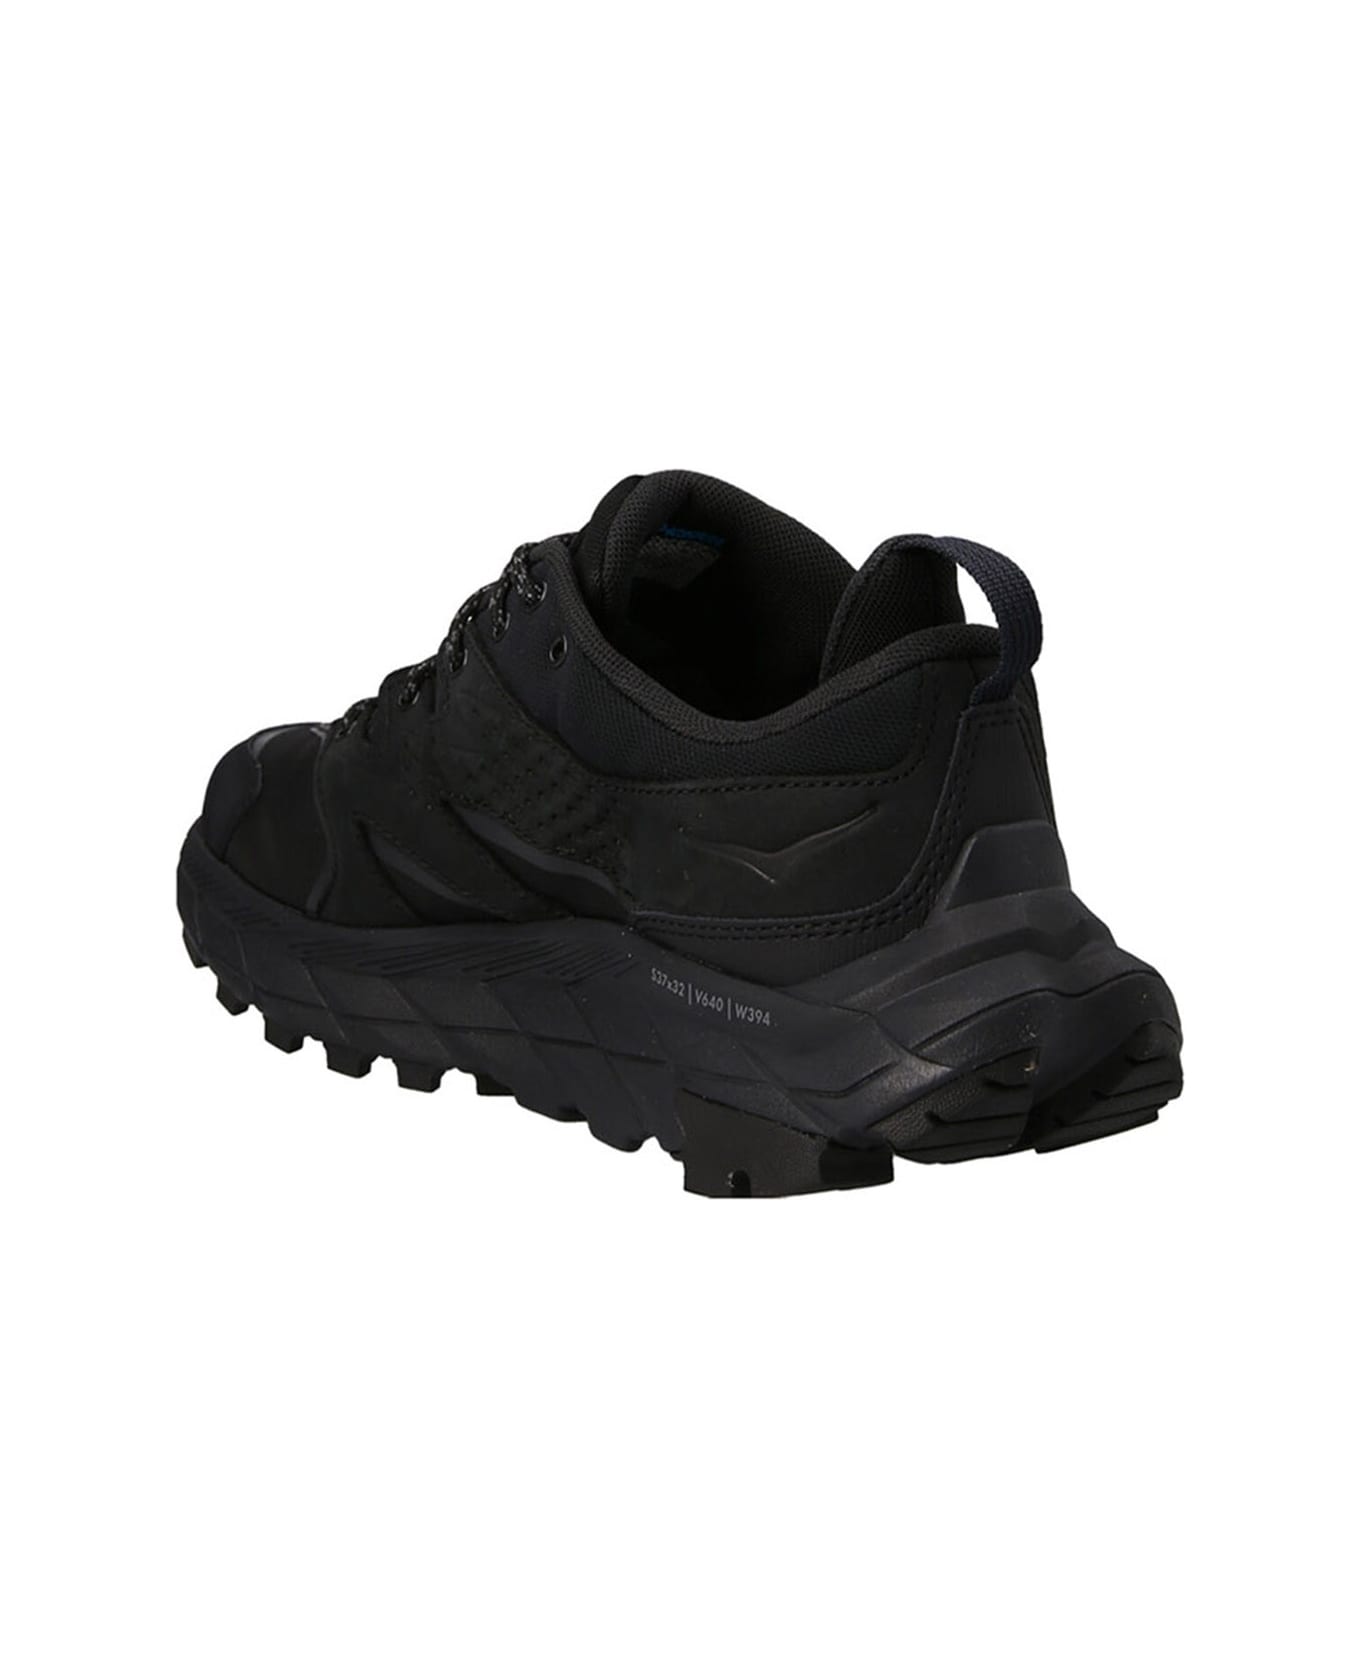 Hoka One One 'anacapa Low Gore-tex' Sneakers - Black  